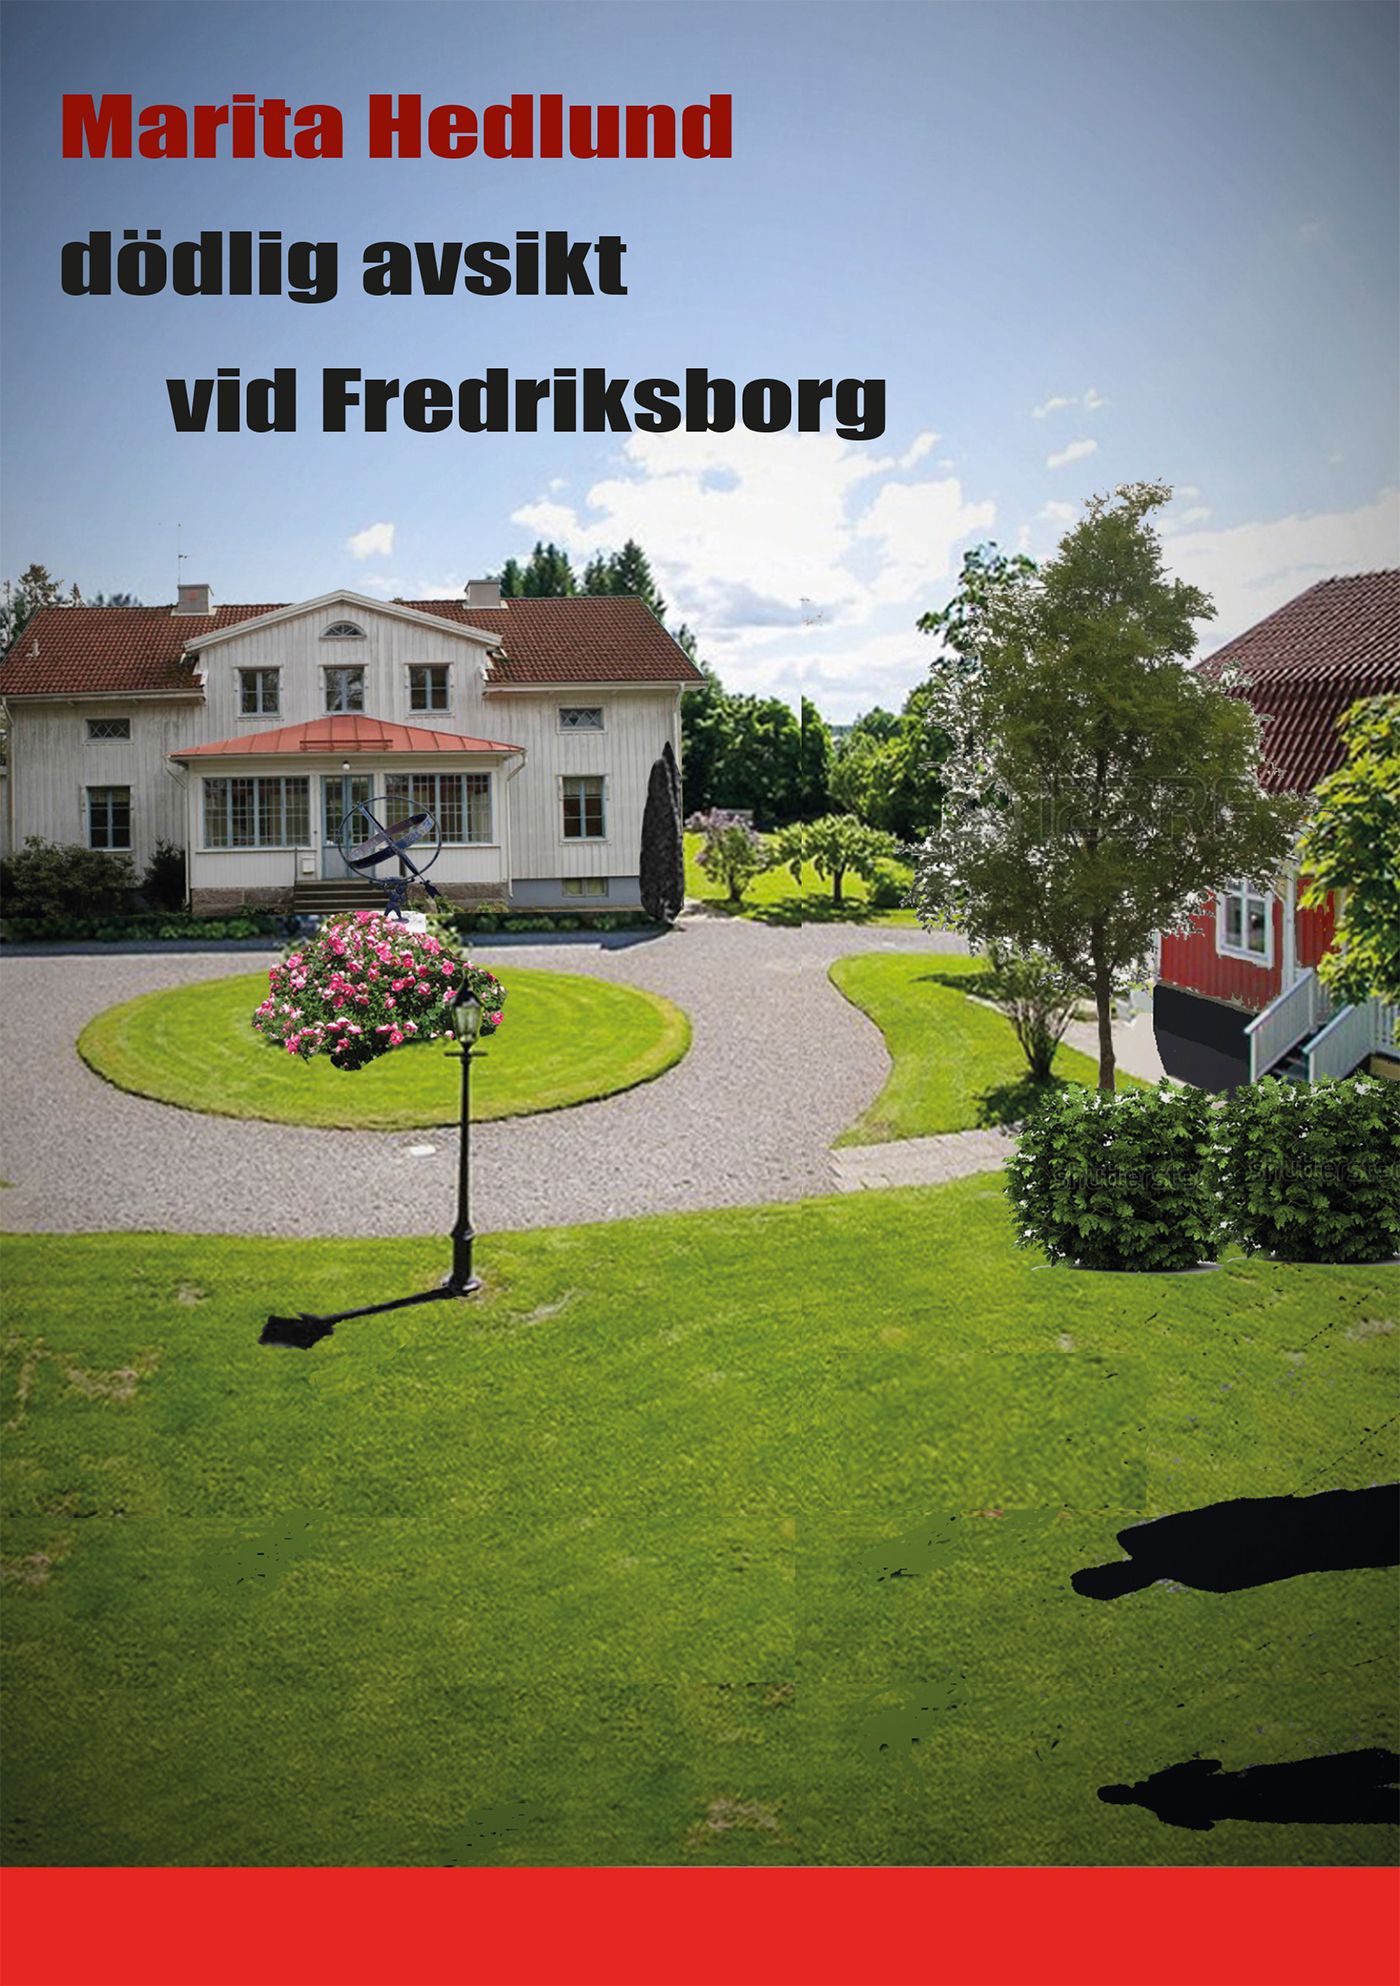 dödlig avsikt vid Fredriksborg, e-bok av Marita Hedlund